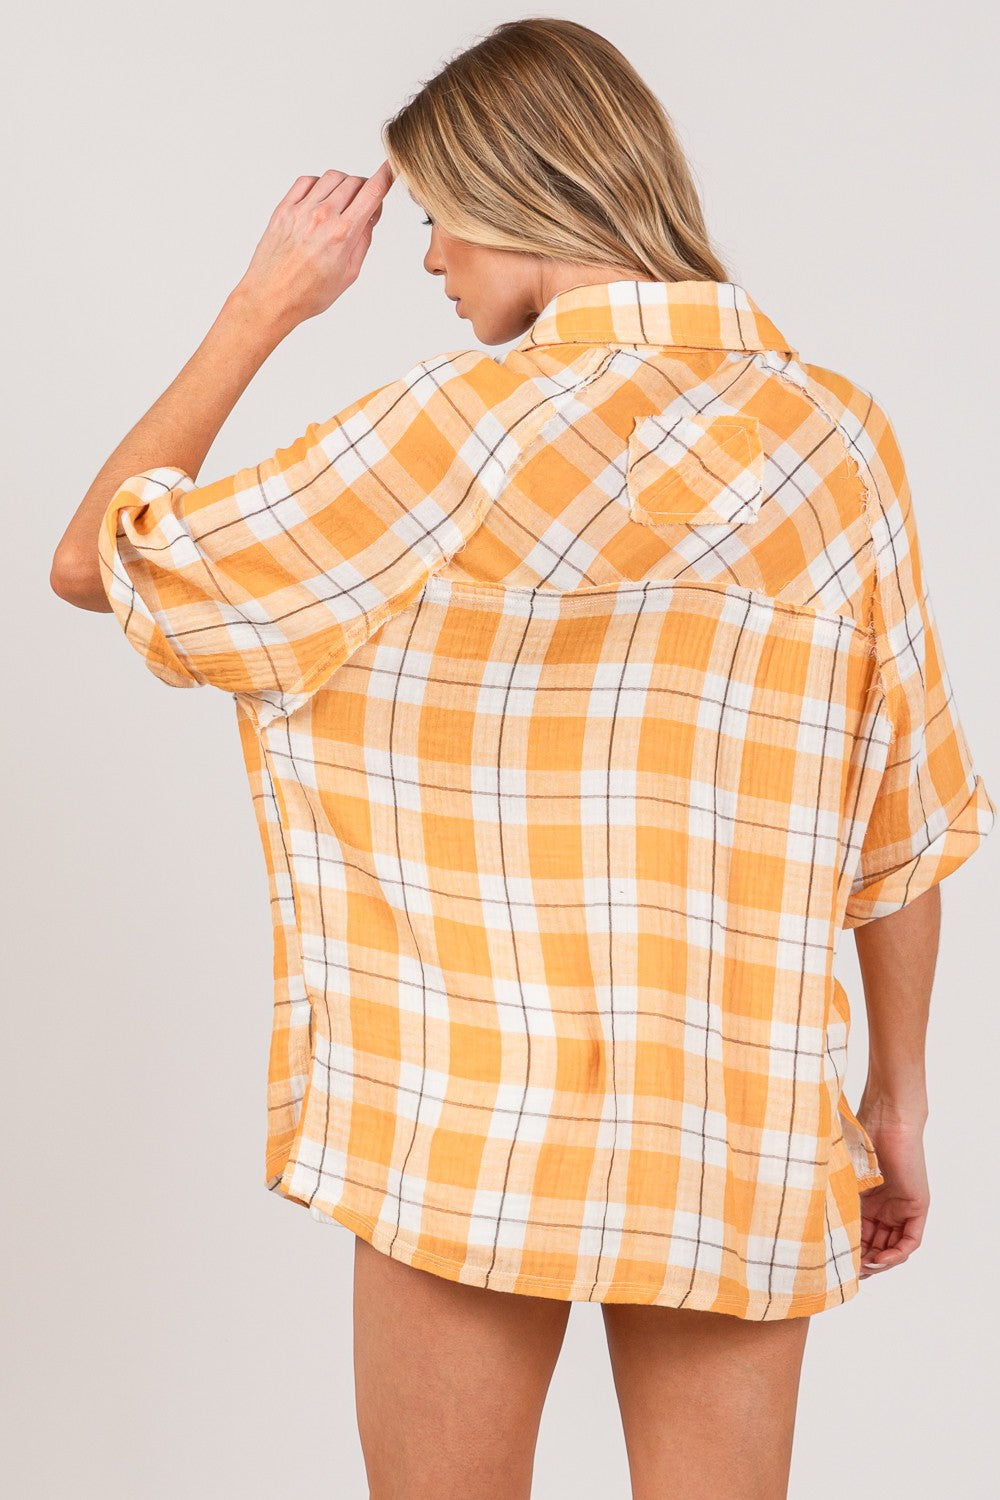 SAGE + FIG Plaid Button Up Side Slit Shirt